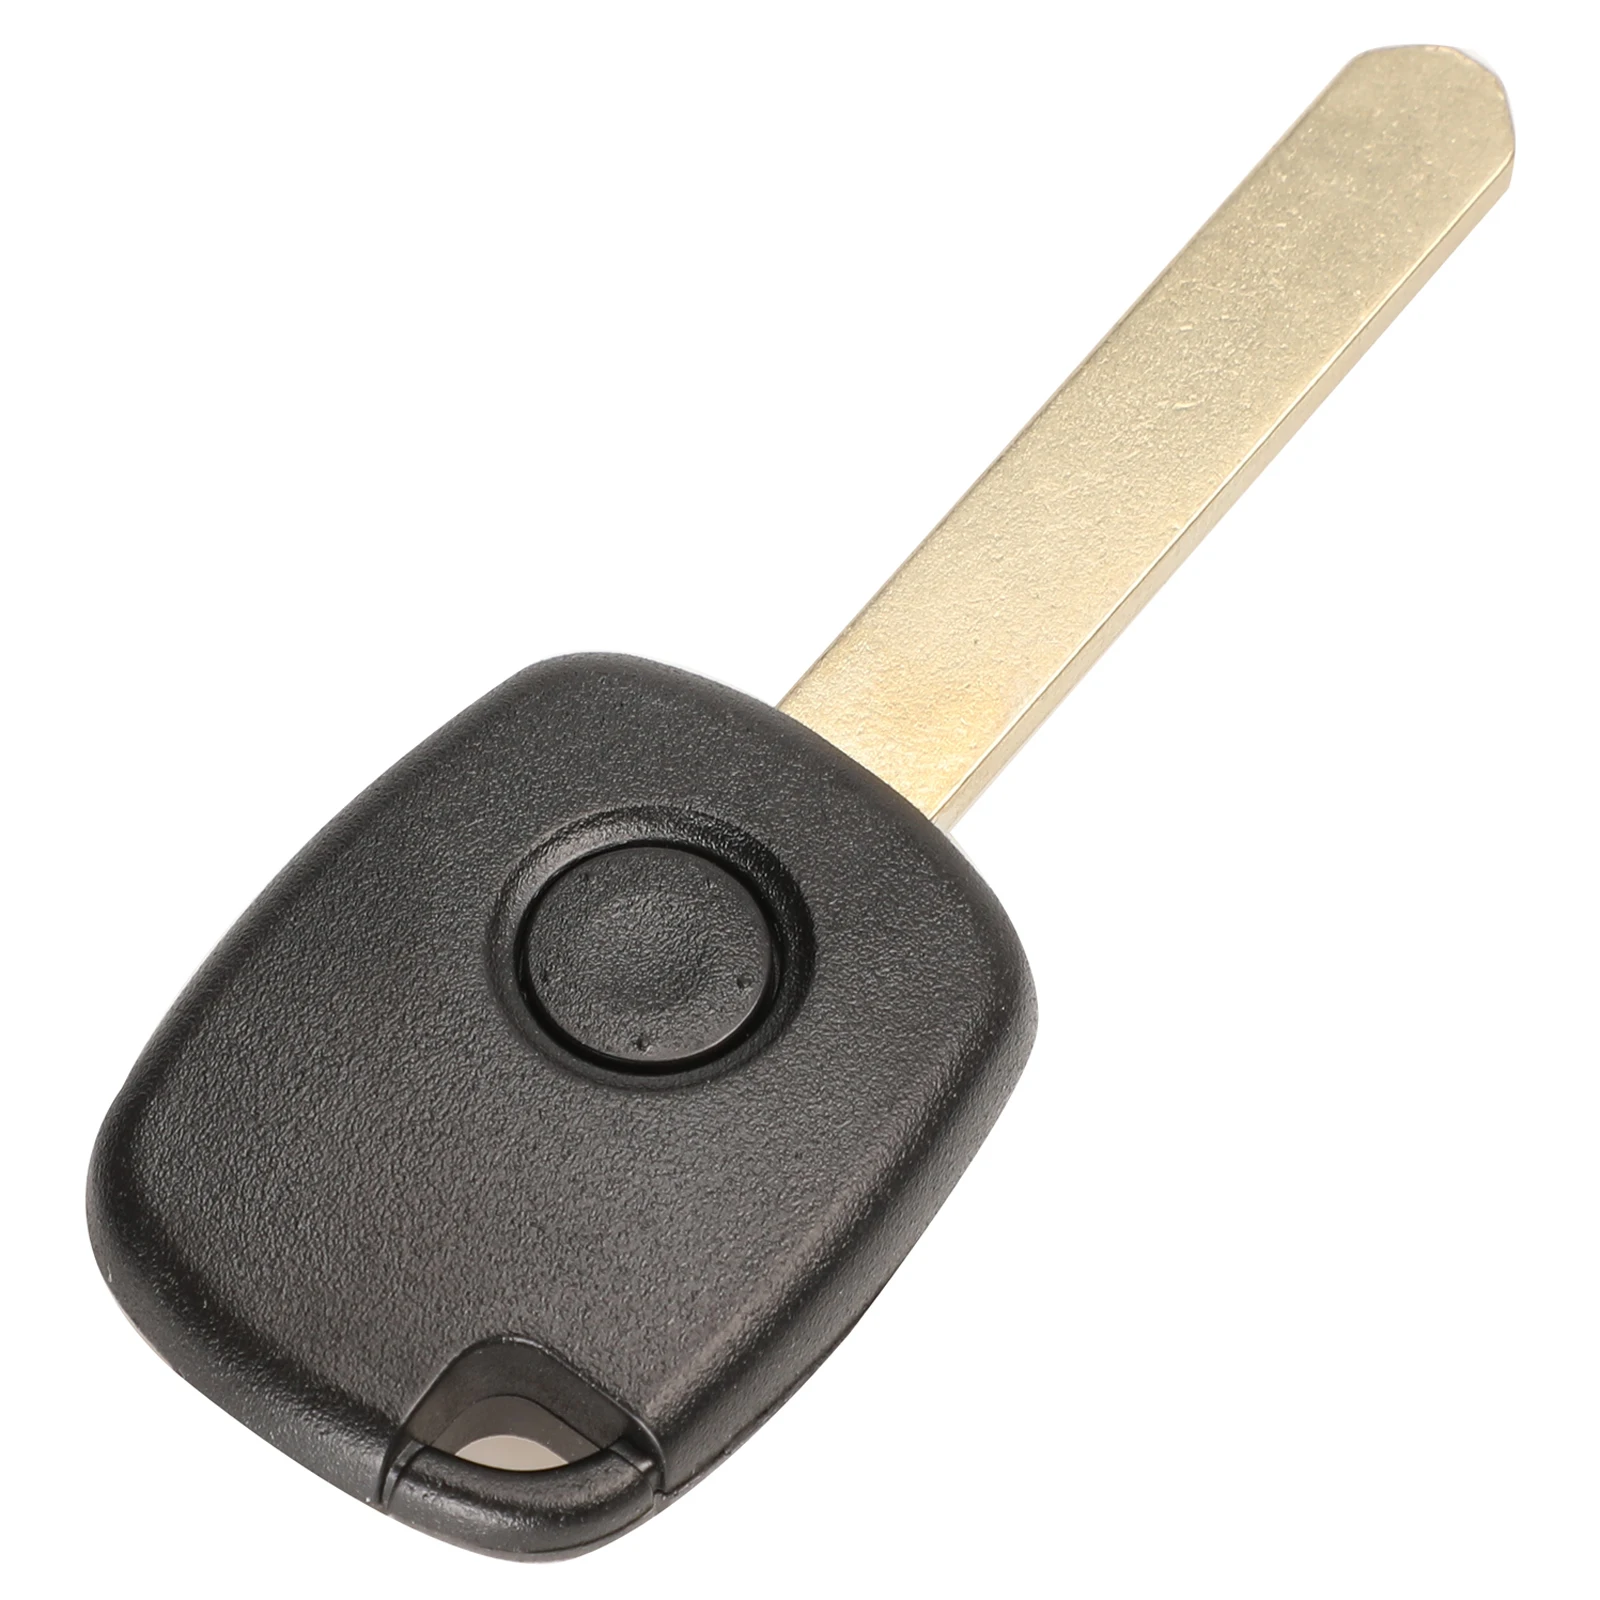 Jingyuqin 1/2 кнопки дистанционного ключа чехол для Honda CR-V Odyssey Fit, City c-ivic accord с кнопкой Pad - Количество кнопок: 1 Button